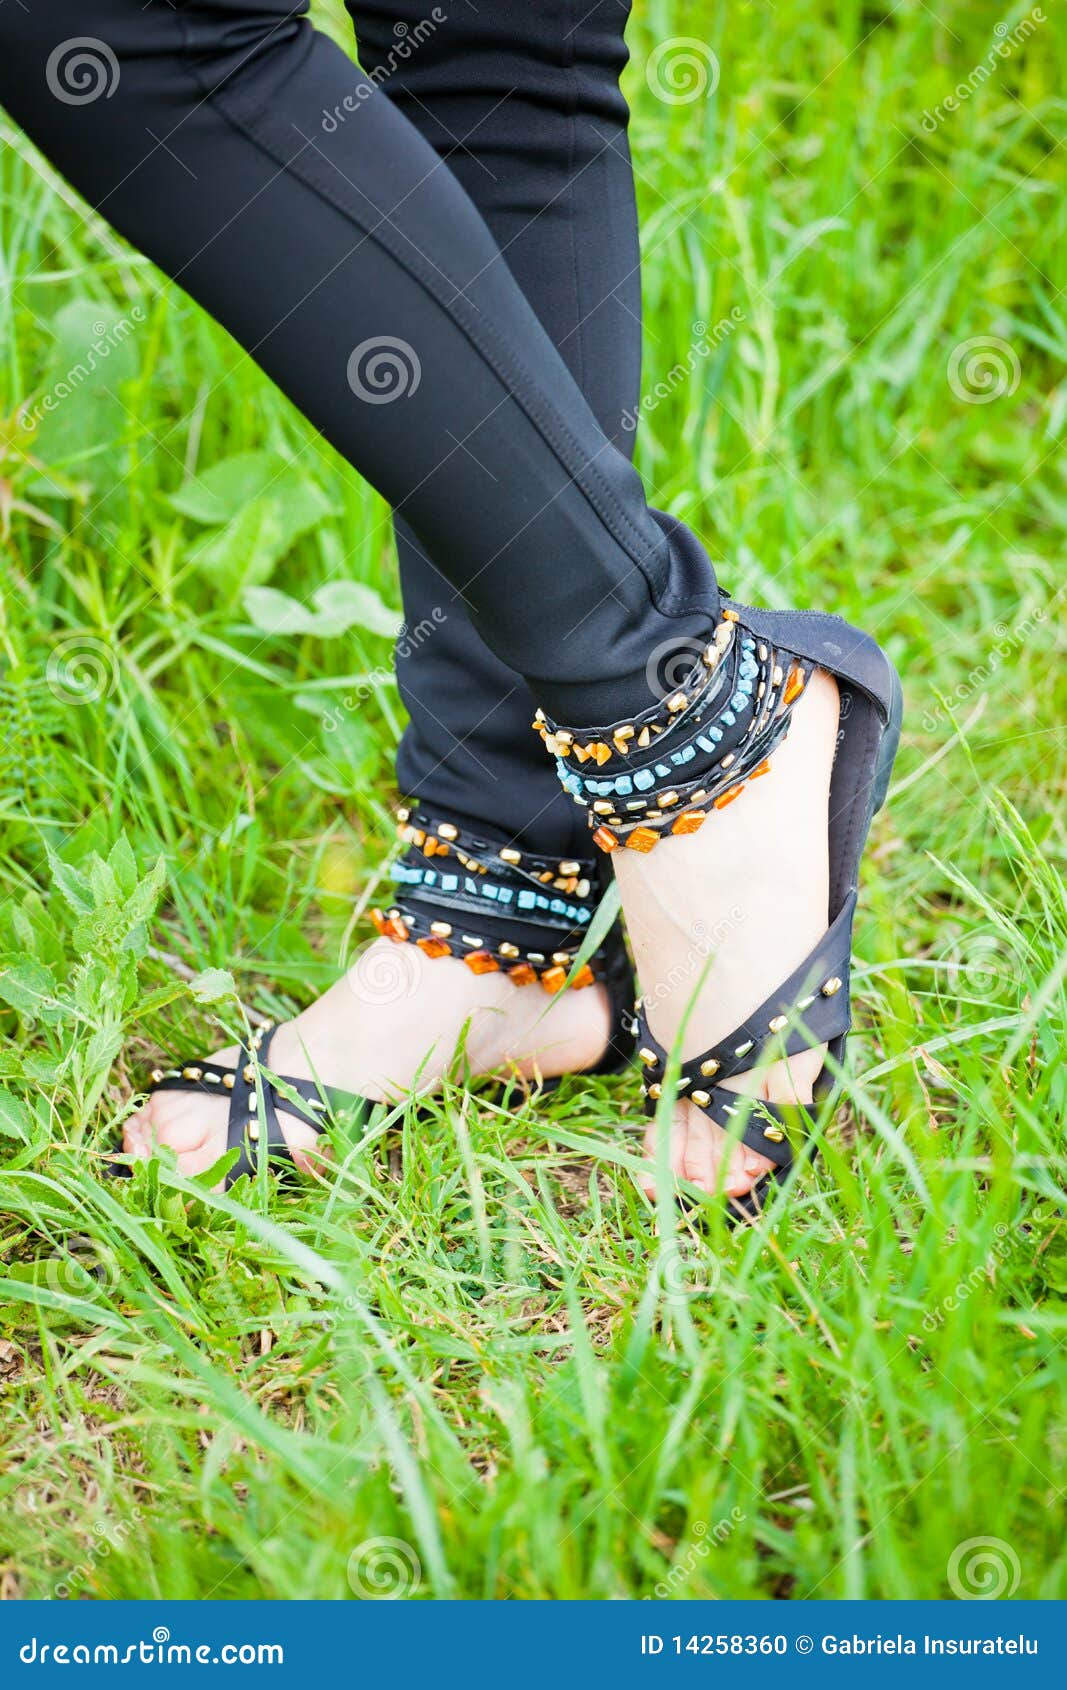 Pin by Fari💖 faizzy on dpz | Footwear design women, Heels, Wedding shoes  low heel